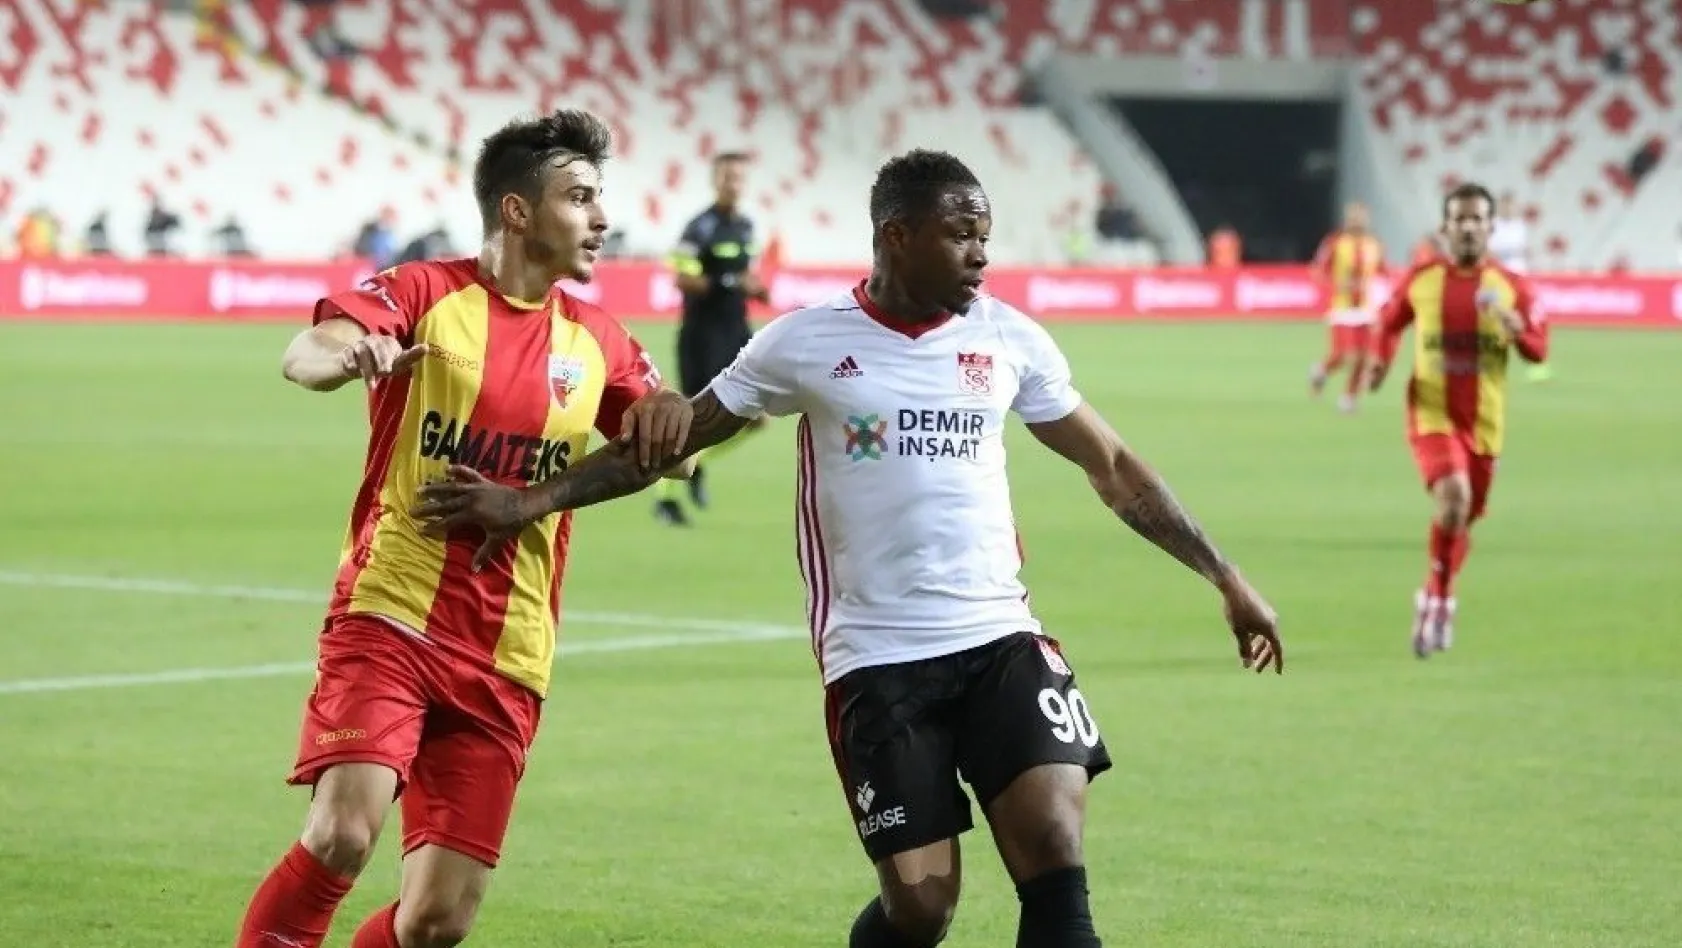 Ziraat Türkiye Kupası: D.G. Sivasspor: 3 - Kızılcabölükspor: 1
